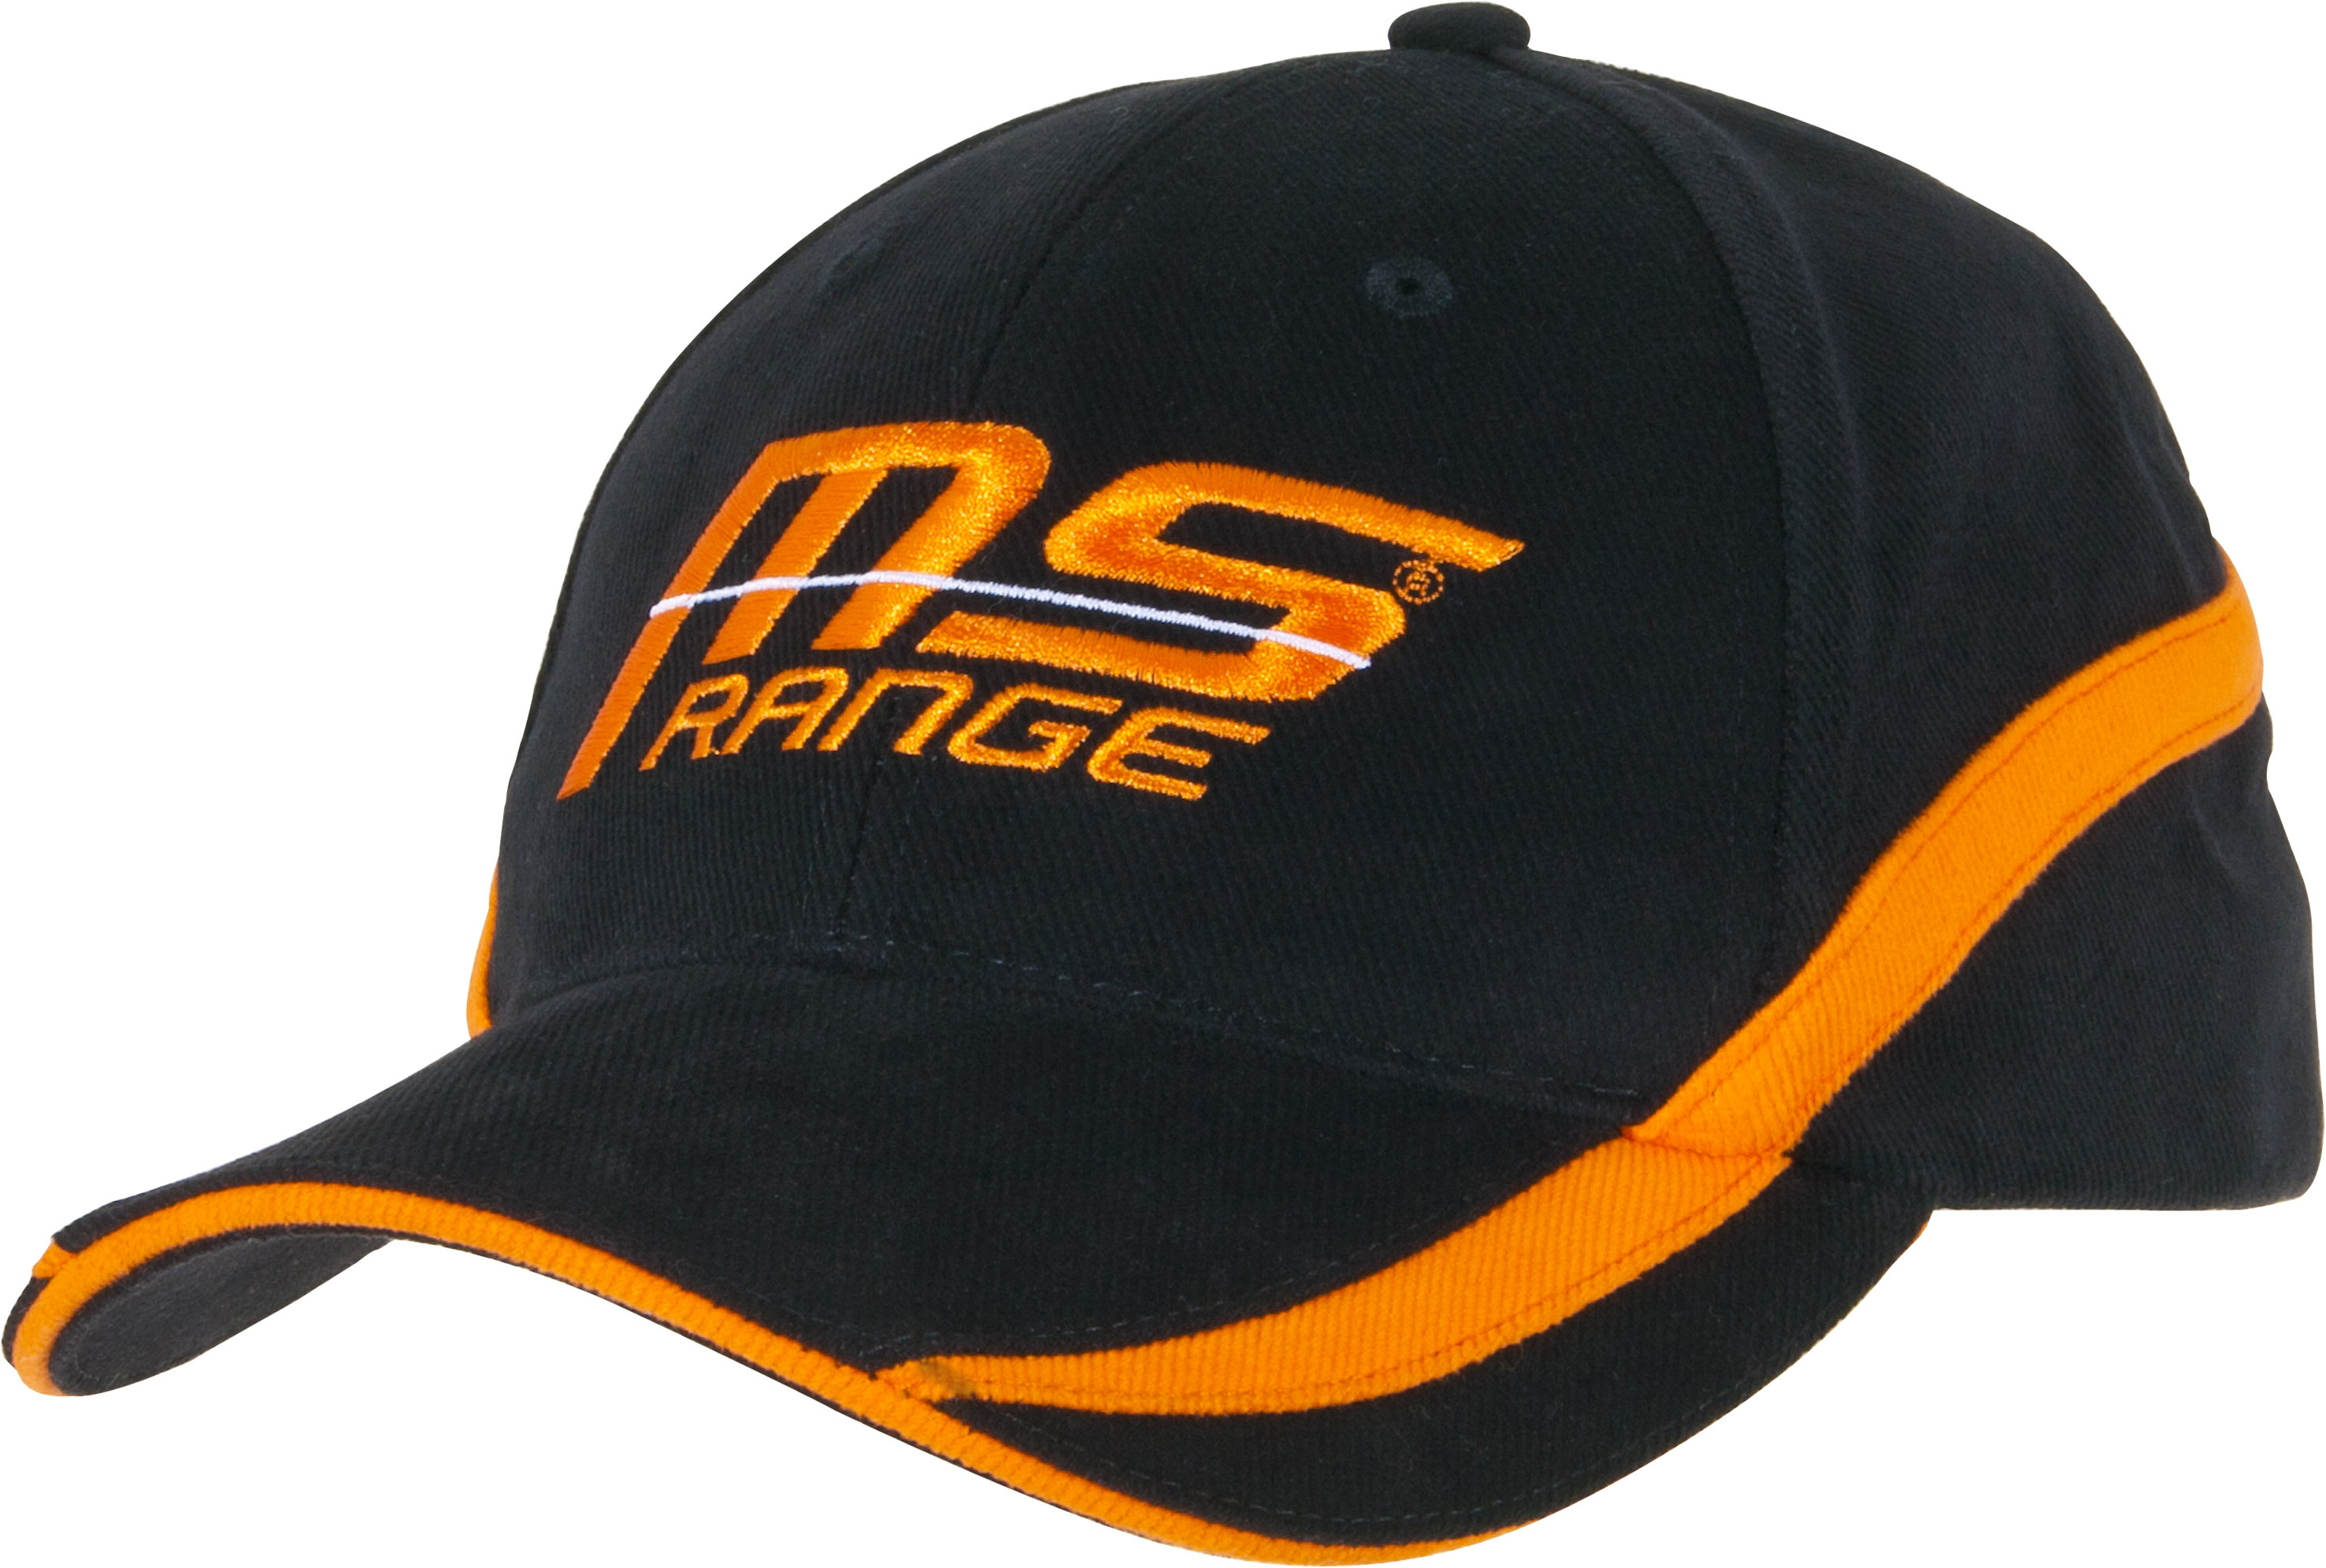 MS Range Cap 2016